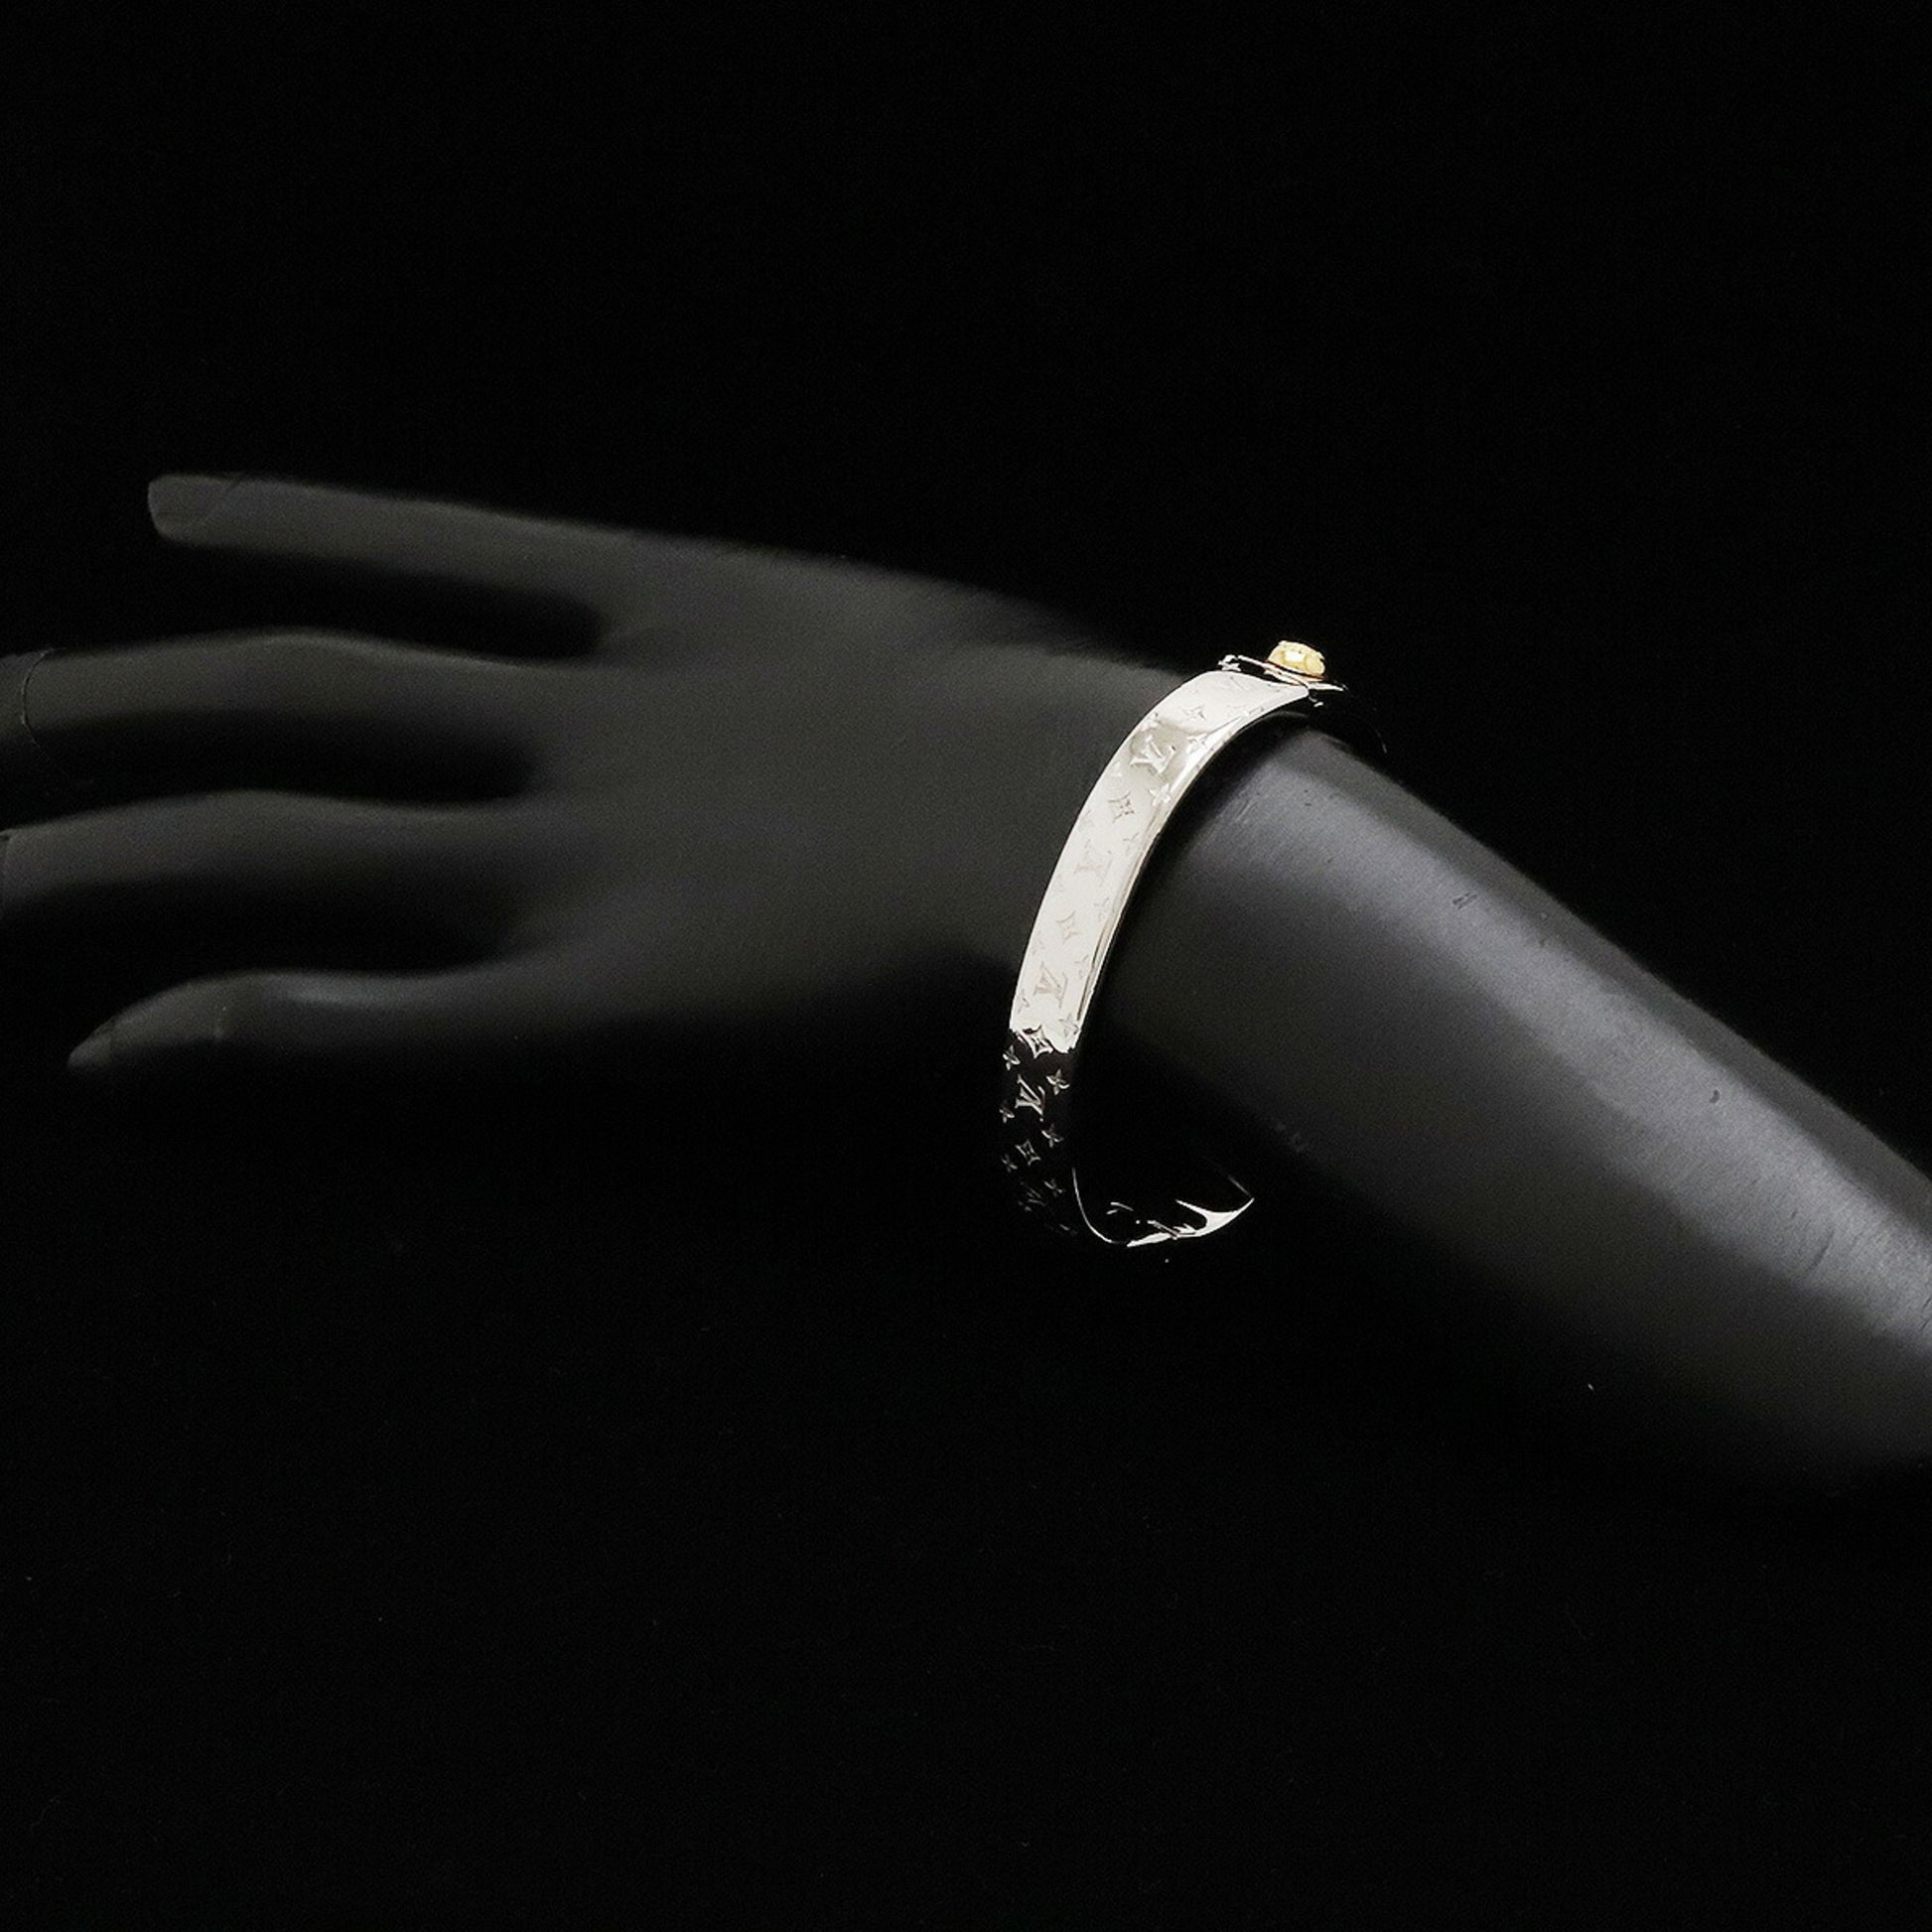 Shop Louis Vuitton Nanogram cuff (M00252) by SolidConnection